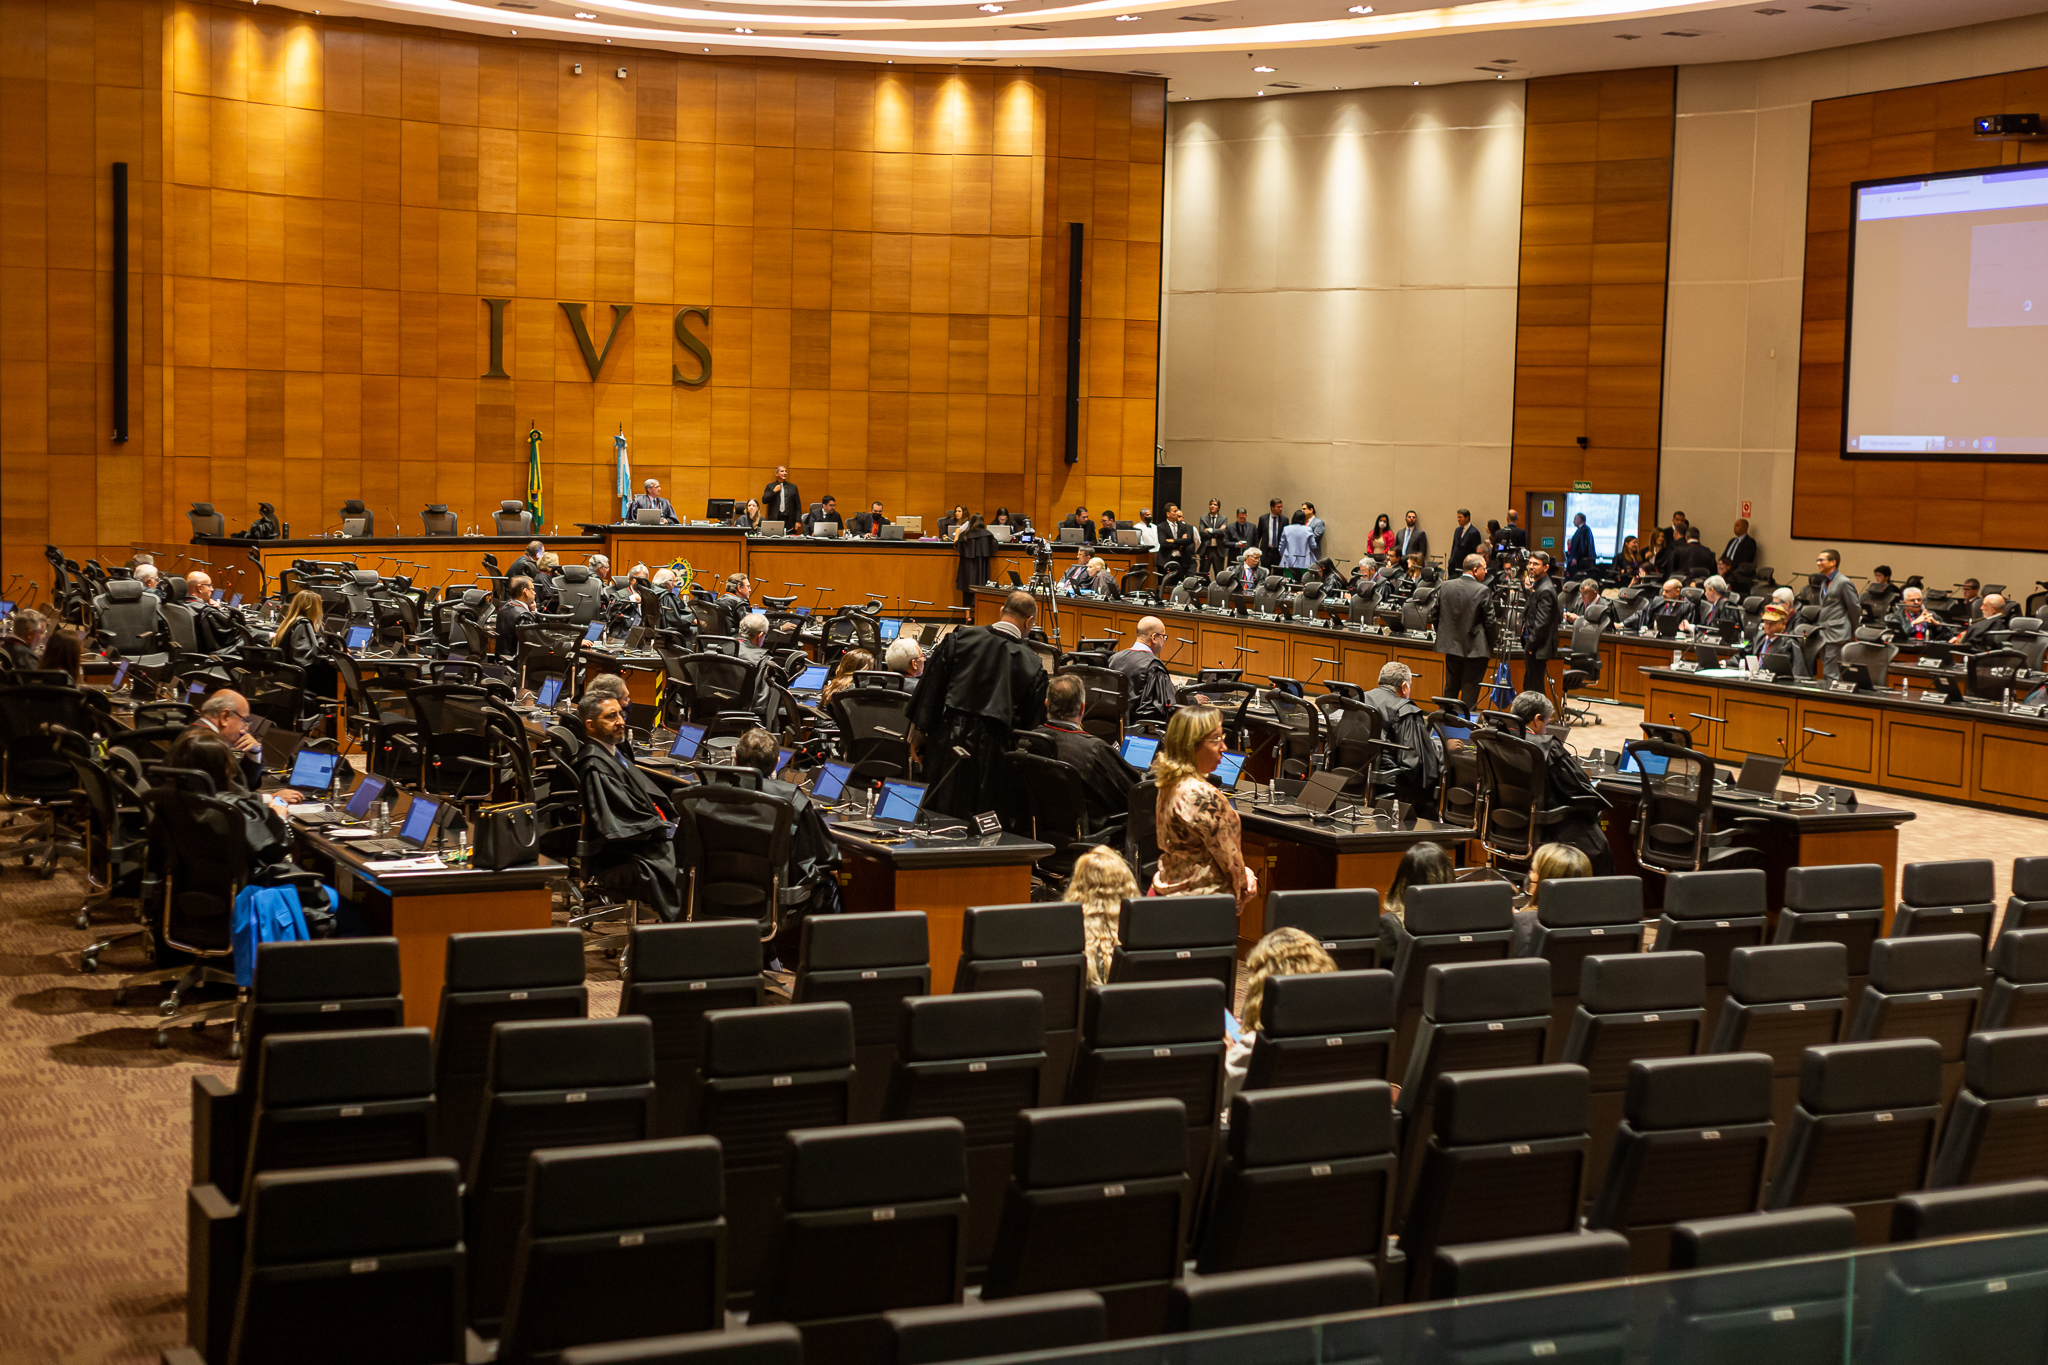 Imagem do Tribunal Pleno durante votação